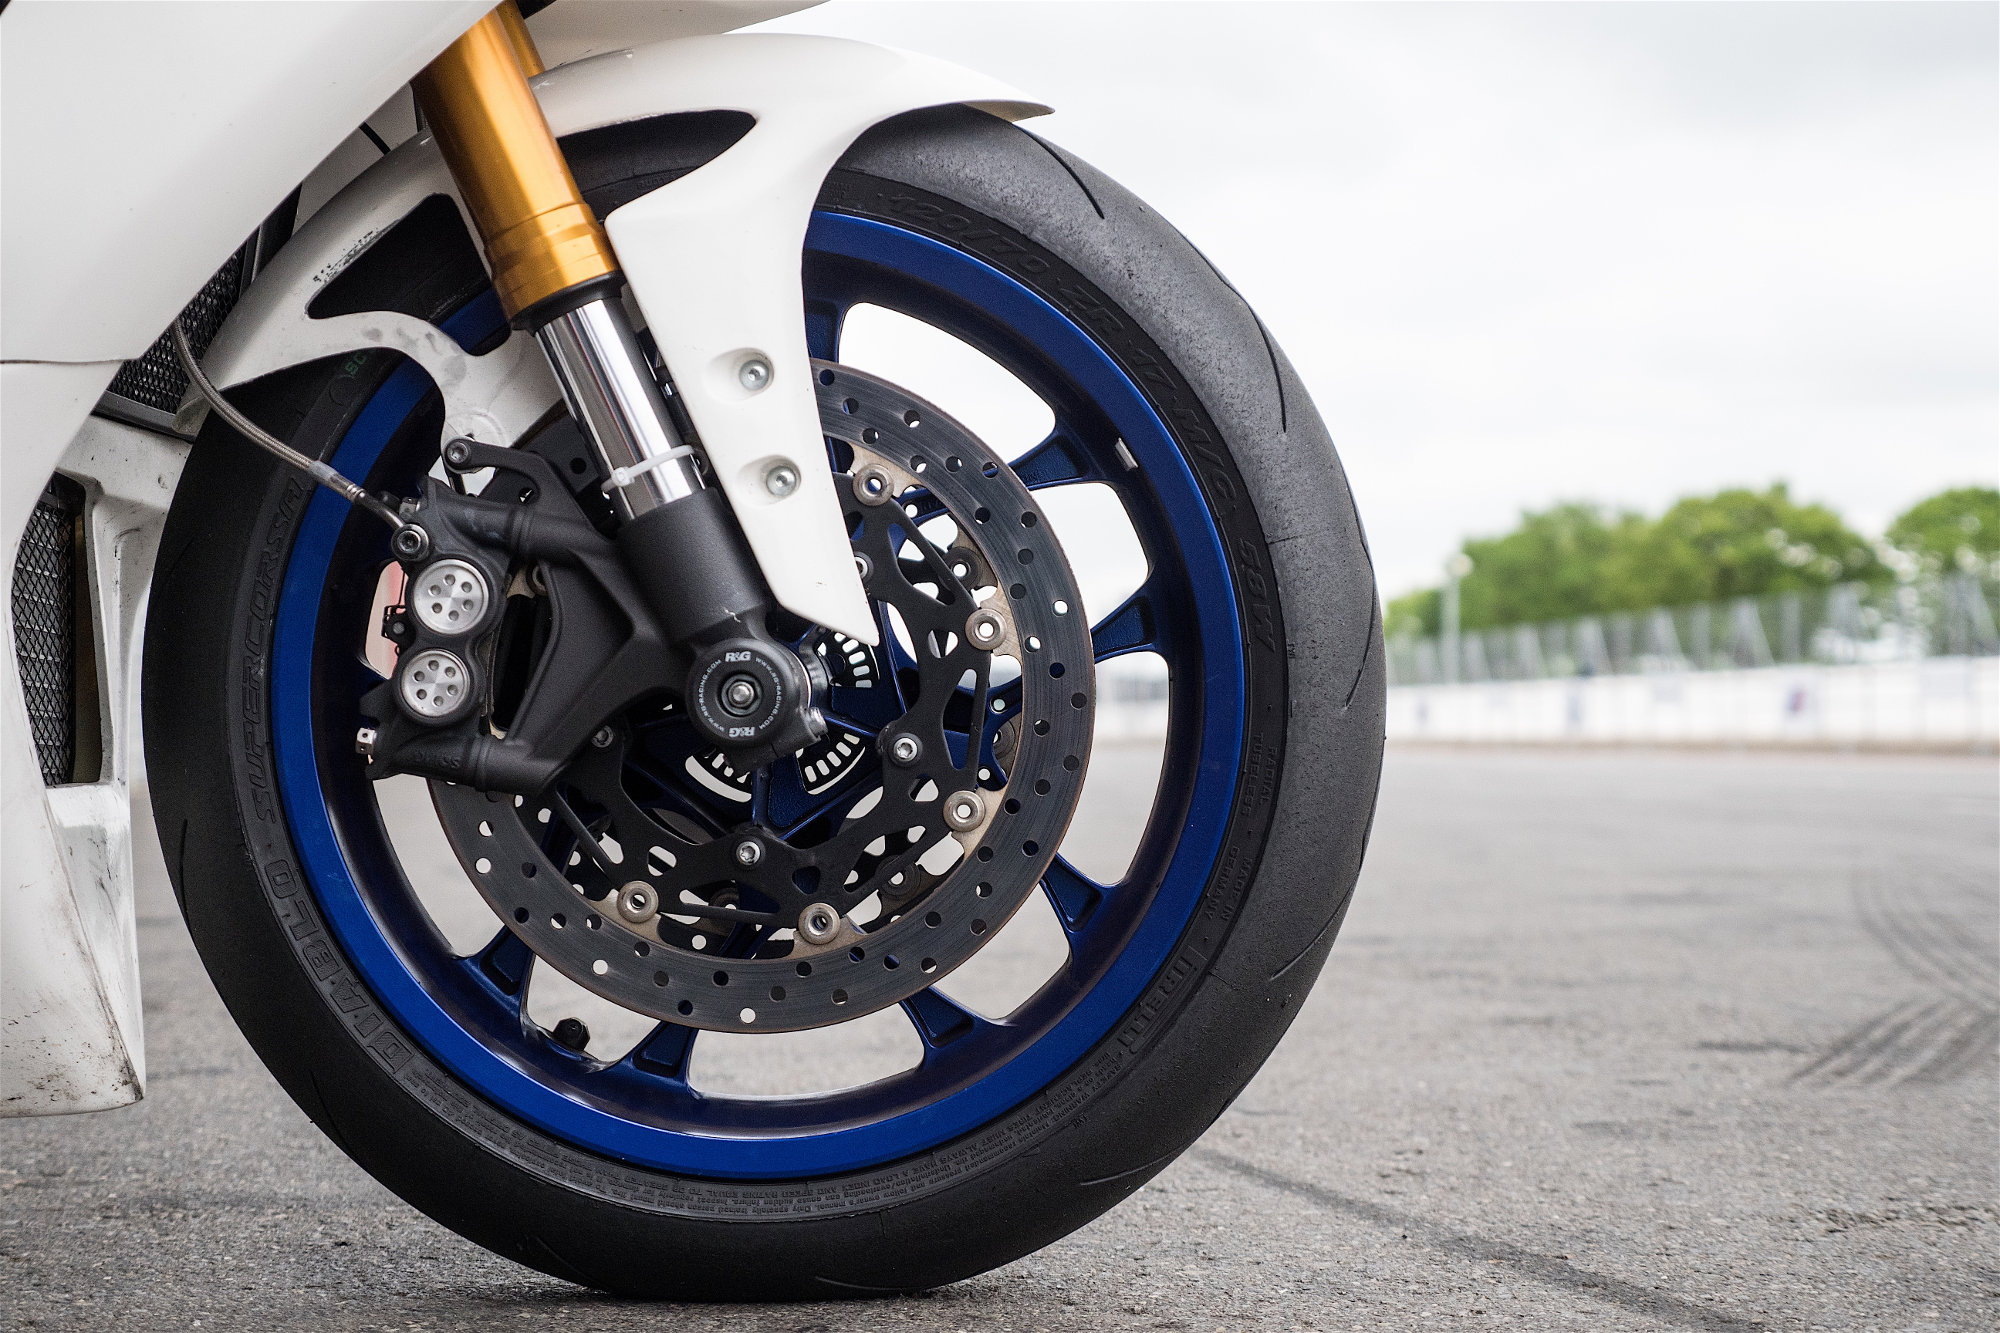 Pneus Pirelli Supercorsa V2 : des pneus racing avec modèle SC homologué pour la route